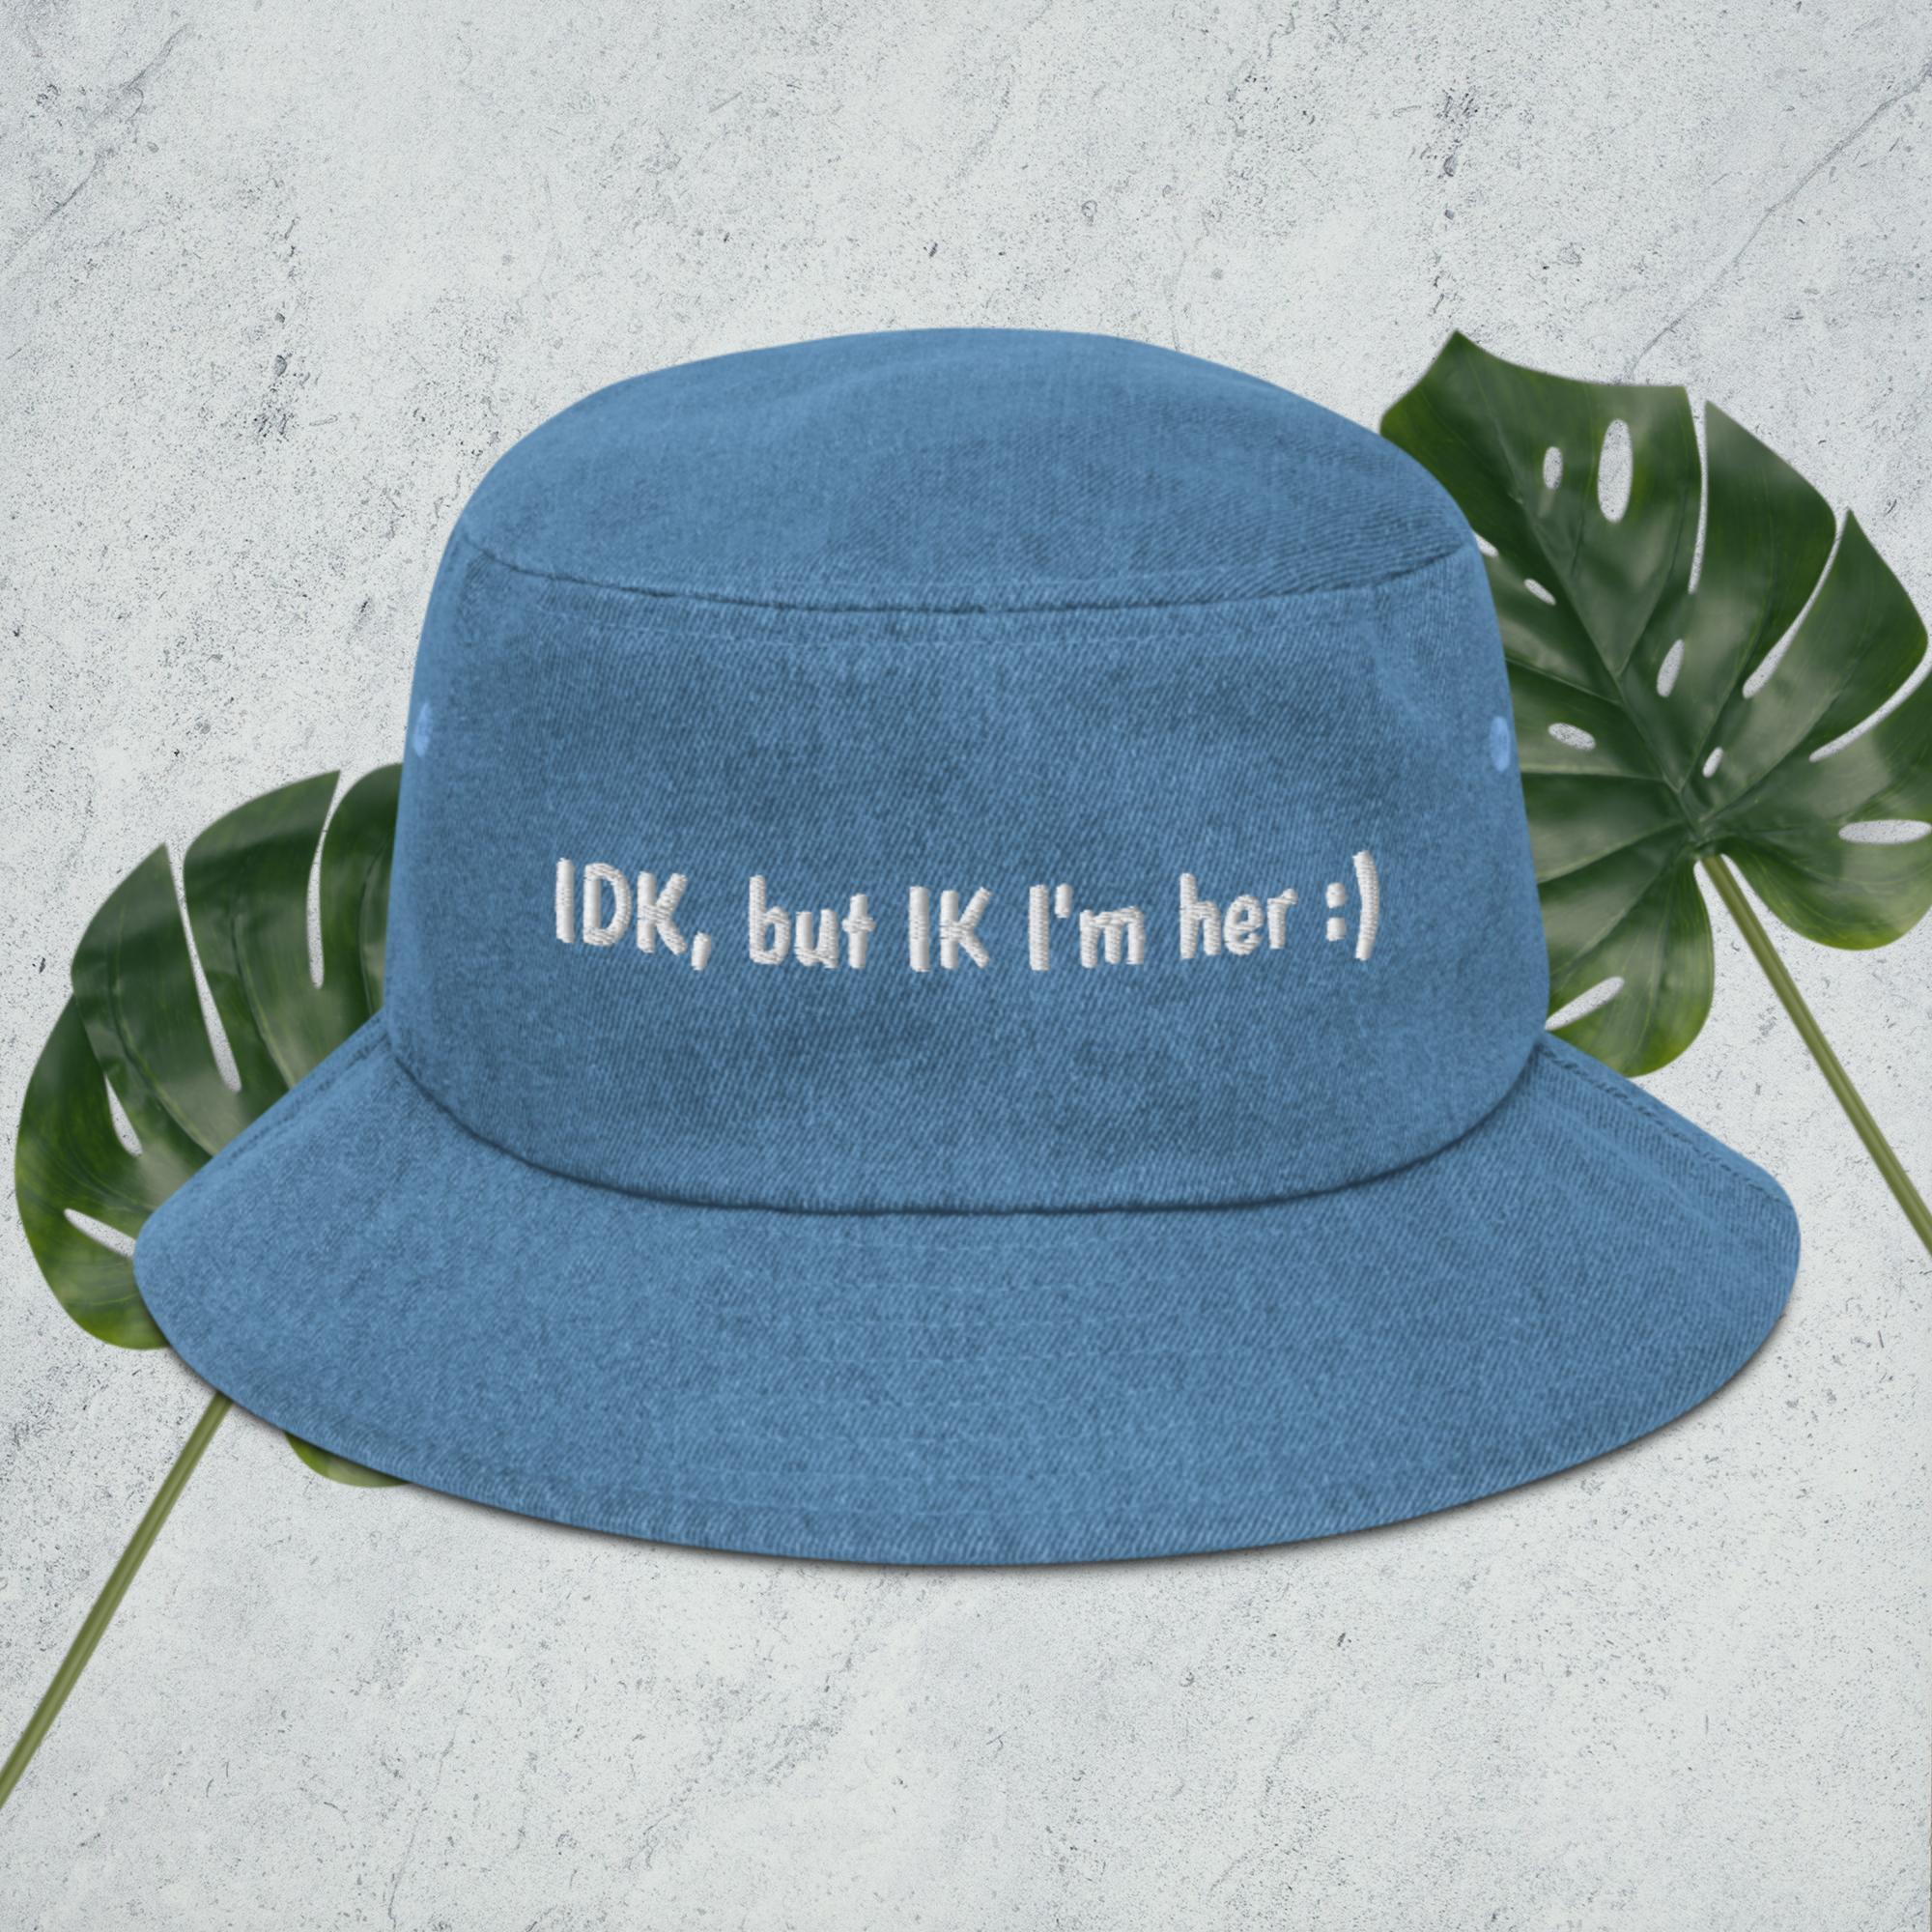 I Am Her Denim bucket hat